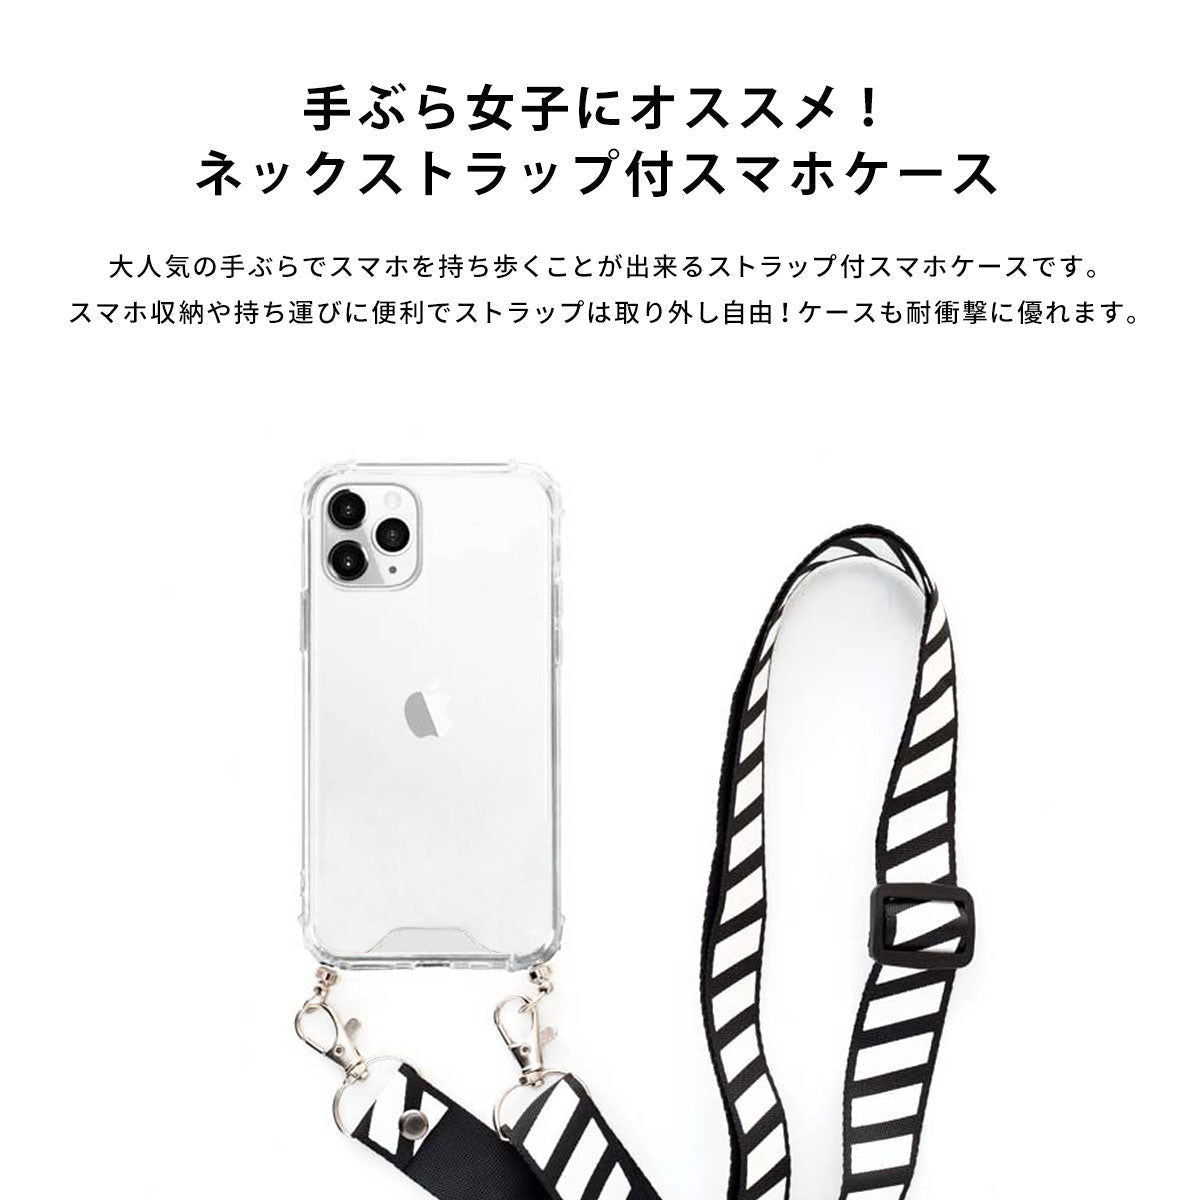 【手ぶら派に】ネックストラップ スマホケース  iPhone13 iPone12 かわいい おしゃれ  ネックストラップ付き 紫陽花 梅雨 名入れ